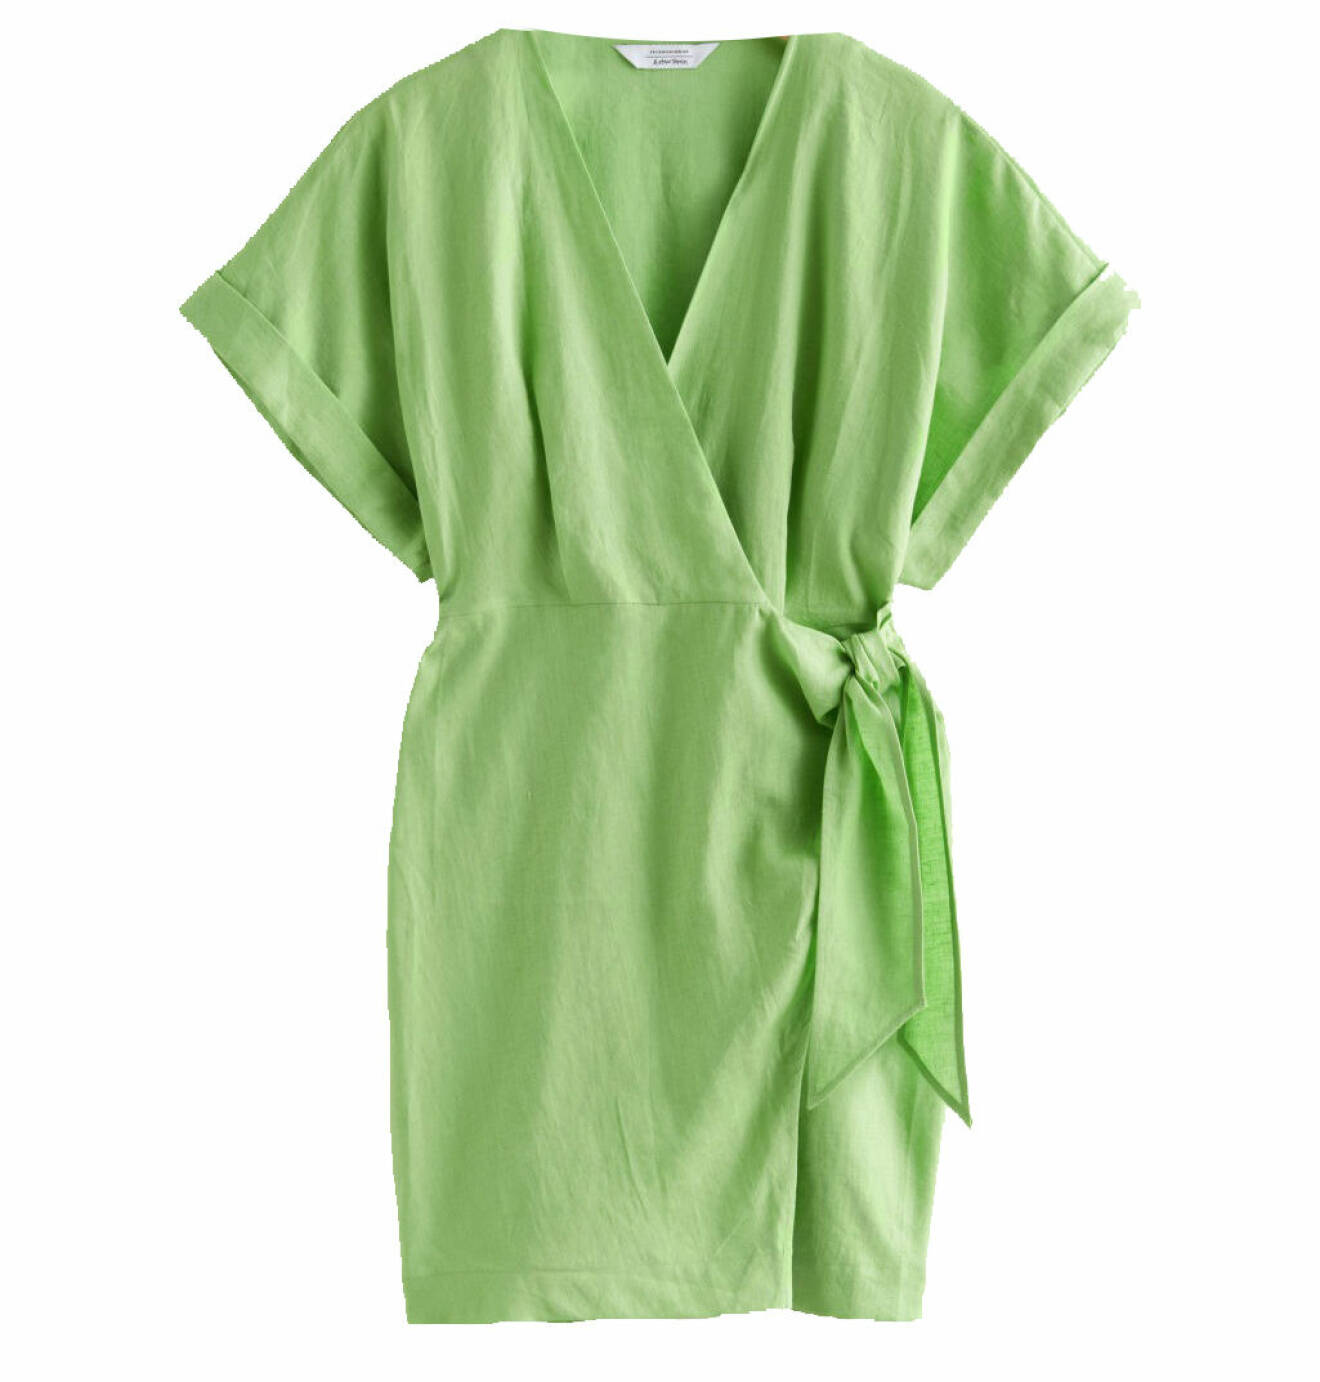 grön klänning linne